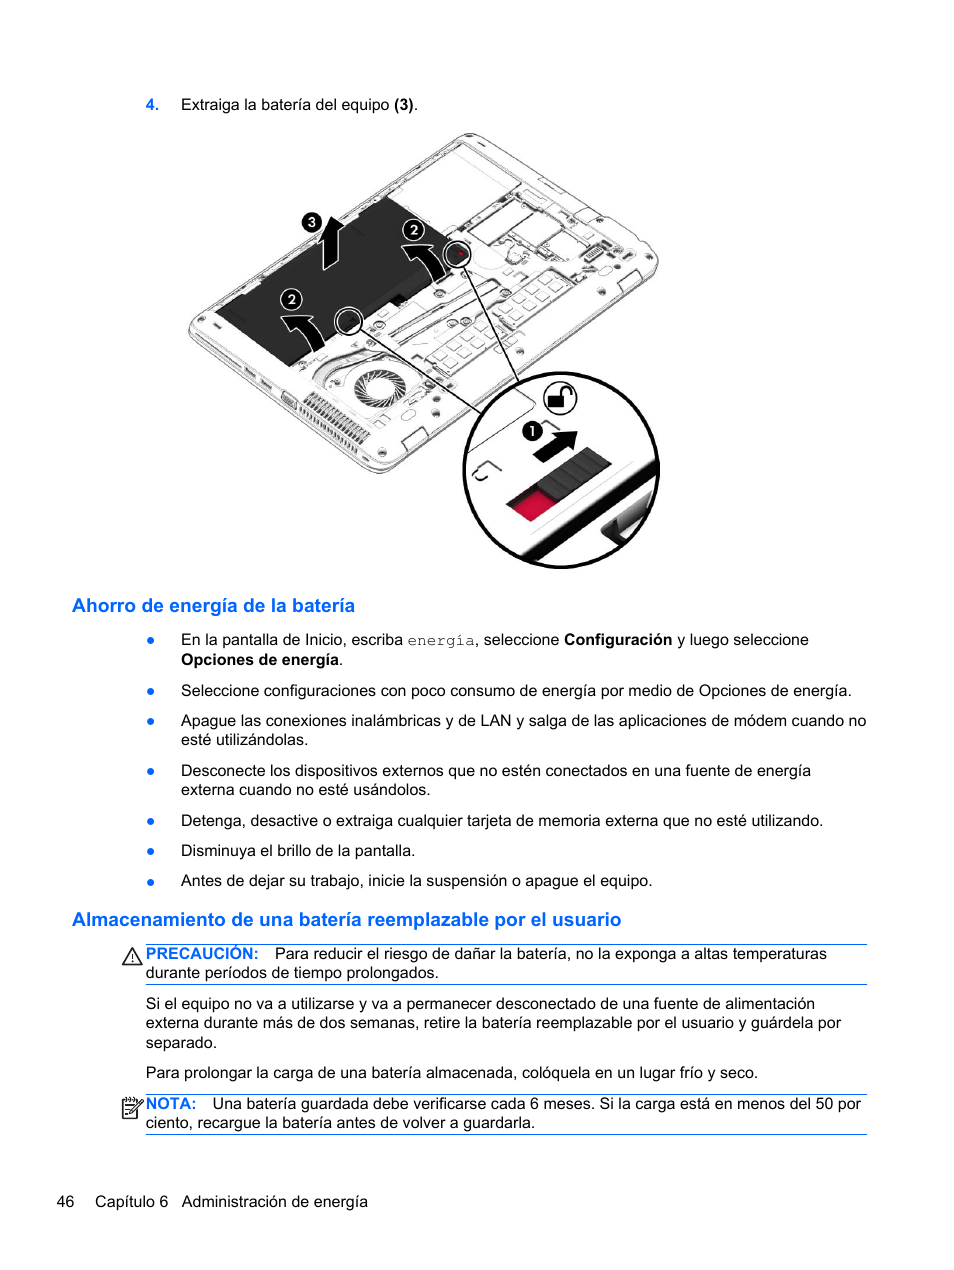 Ahorro de energía de la batería | HP PC Notebook HP EliteBook 850 G1 Manual del usuario | Página 56 / 116